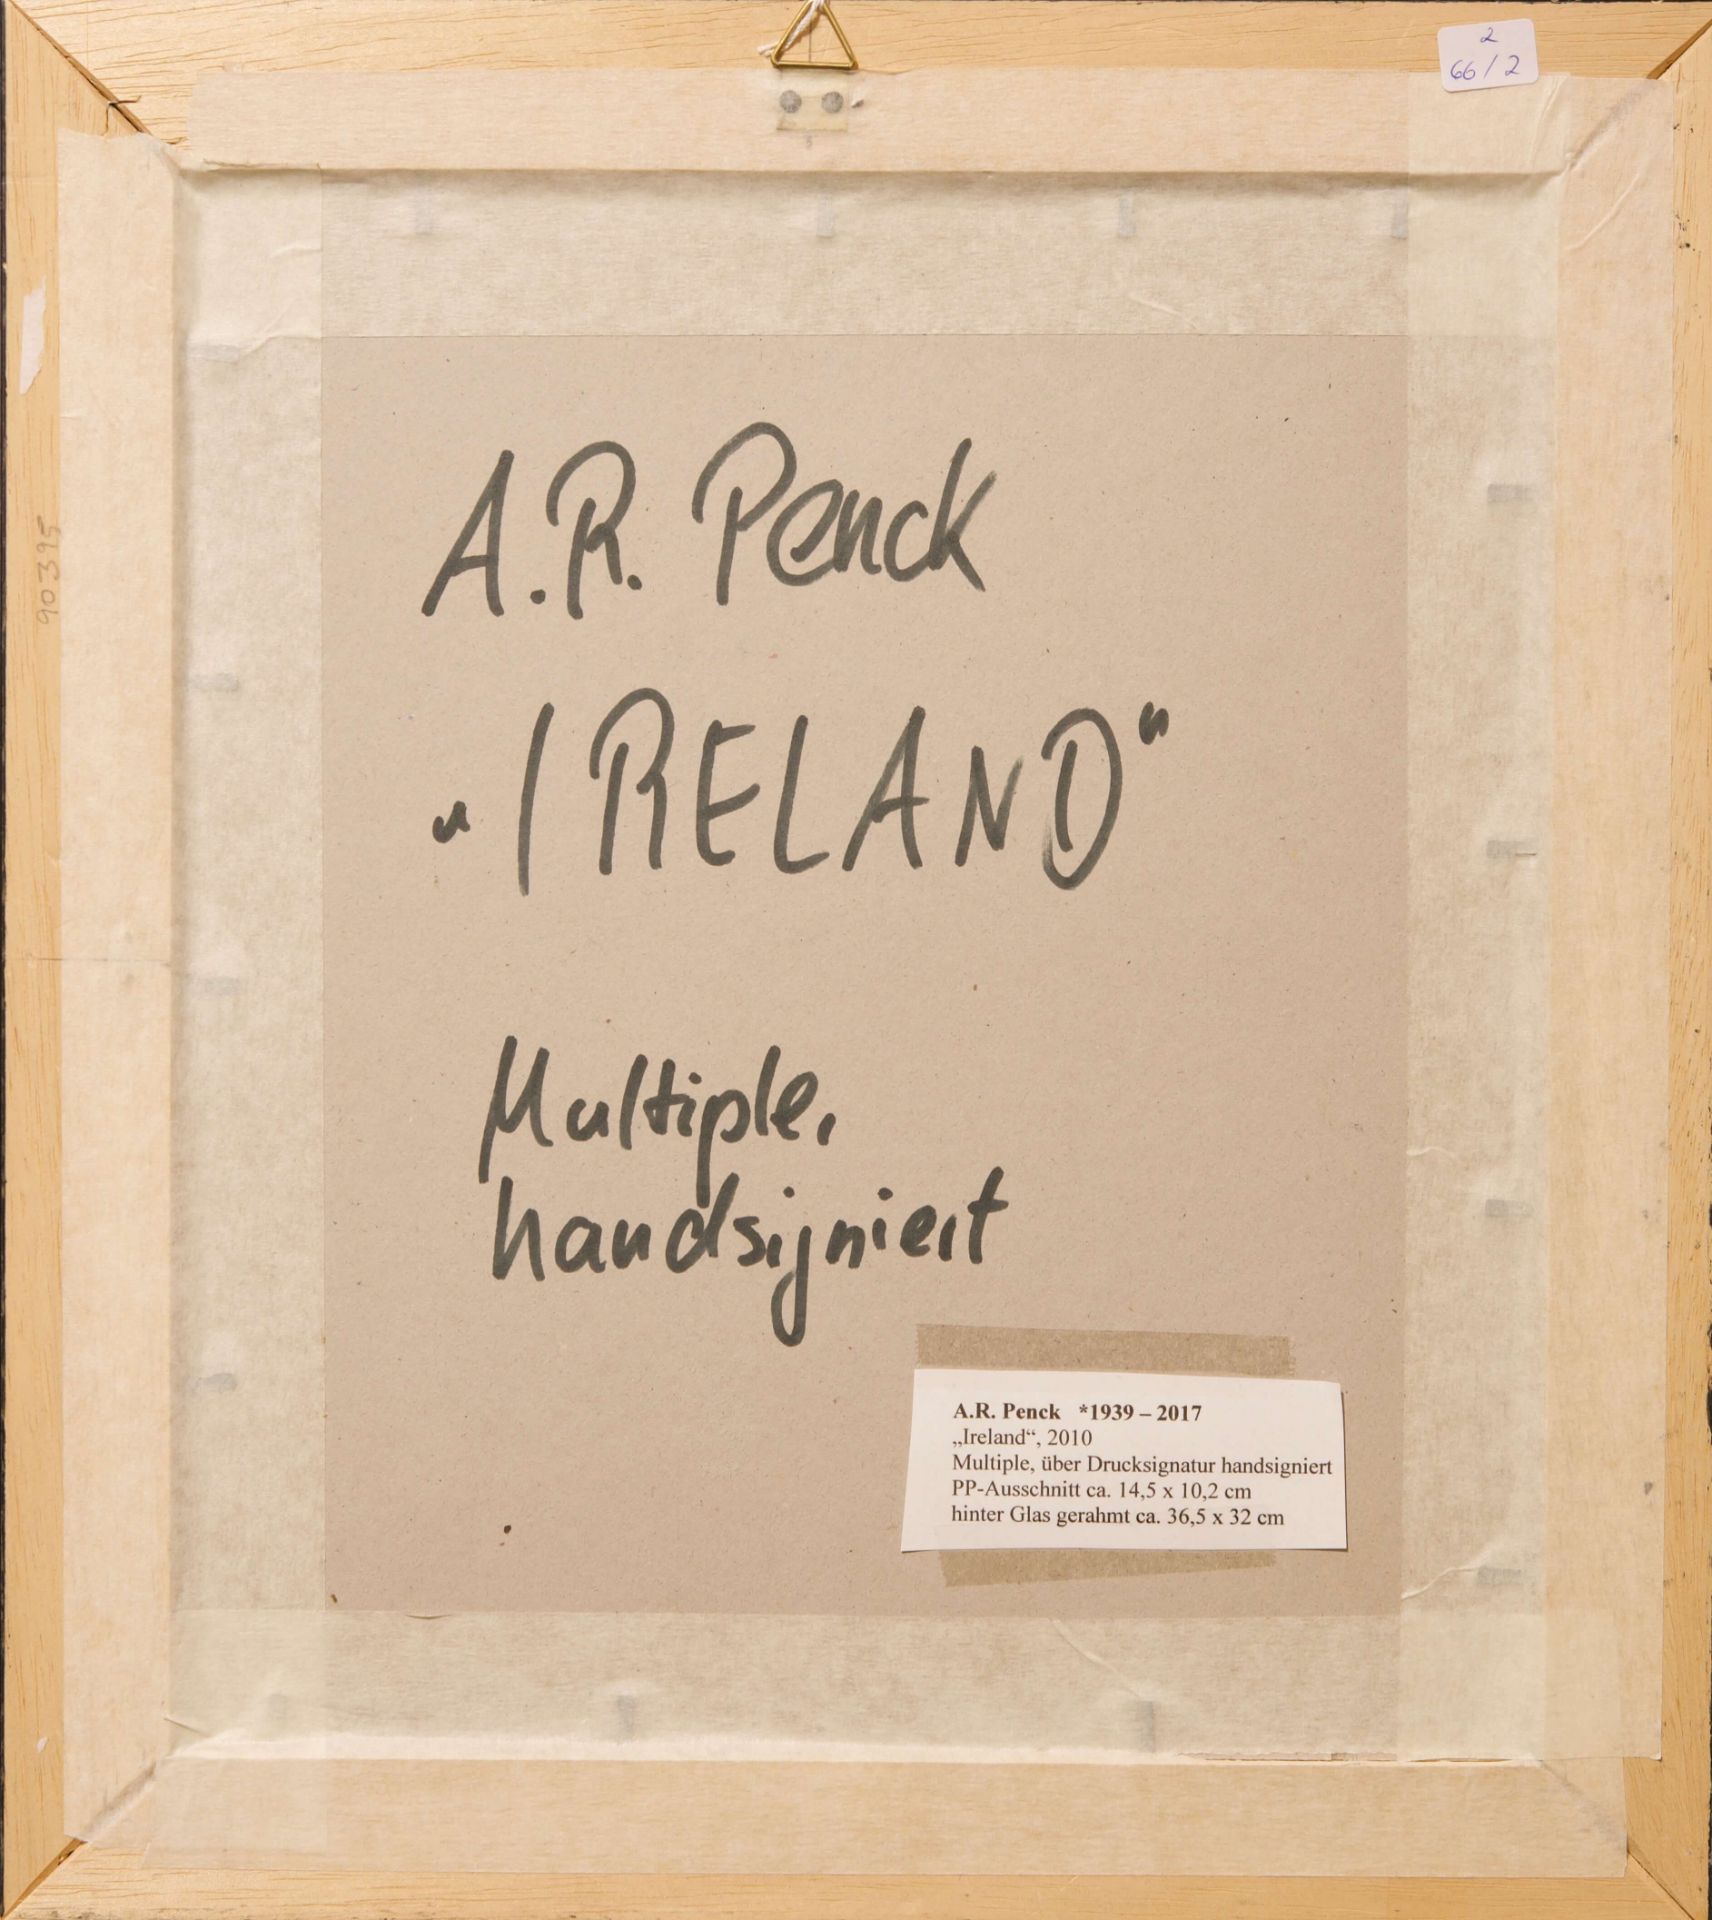 A.R.Penck 1939-2017, Irland, 2010 |A.R.Penck 1939-2017, Ireland, 2010 - Bild 5 aus 5